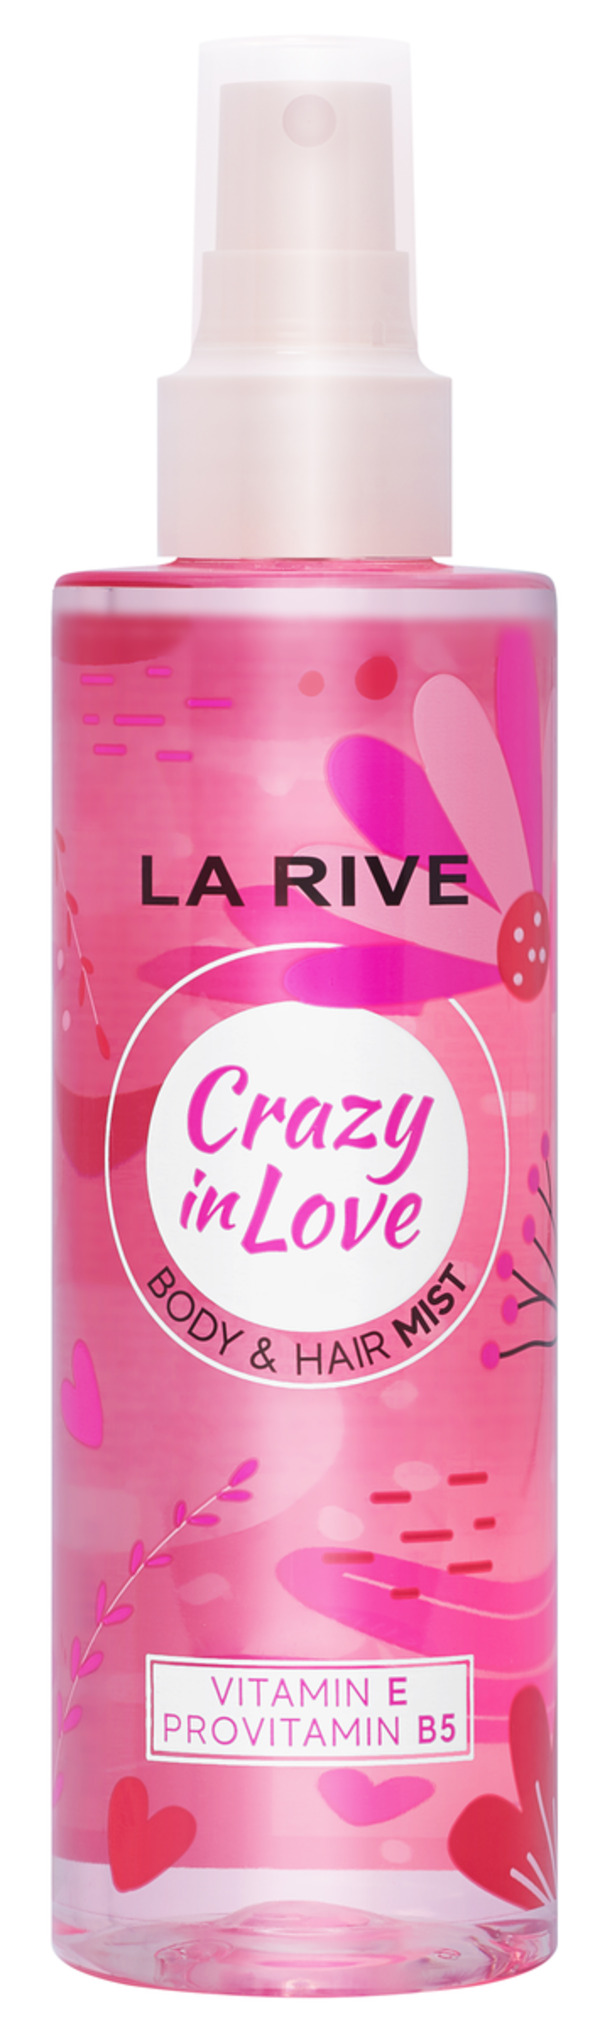 Bild 1 von LA RIVE Body & Hair Mist Crazy in Love